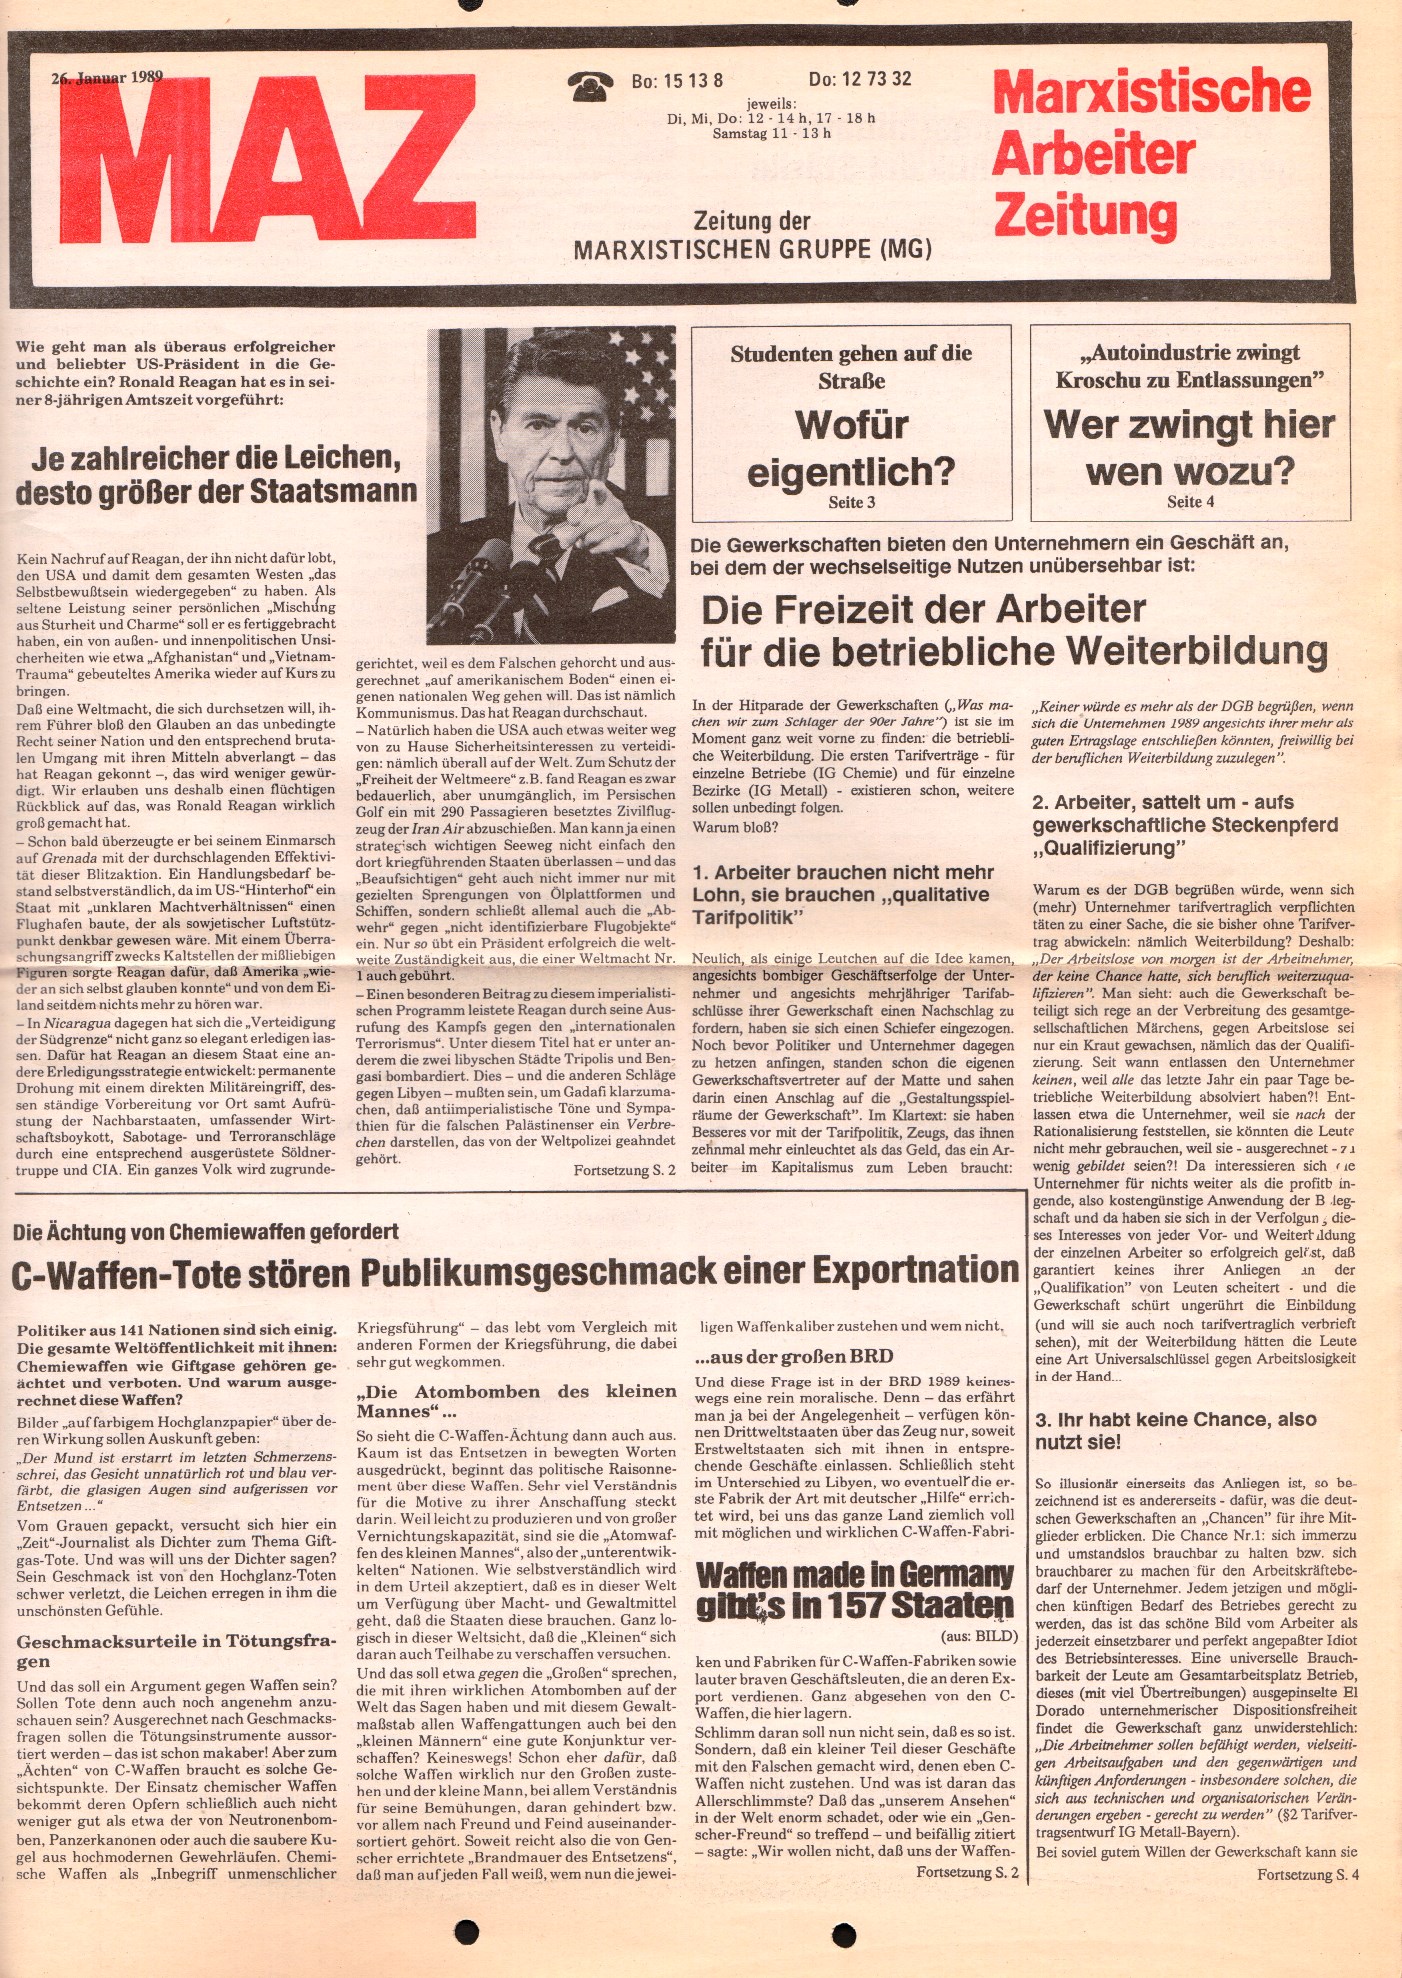 Ruhrgebiet_MG_Marxistische_Arbeiterzeitung_19890126_01